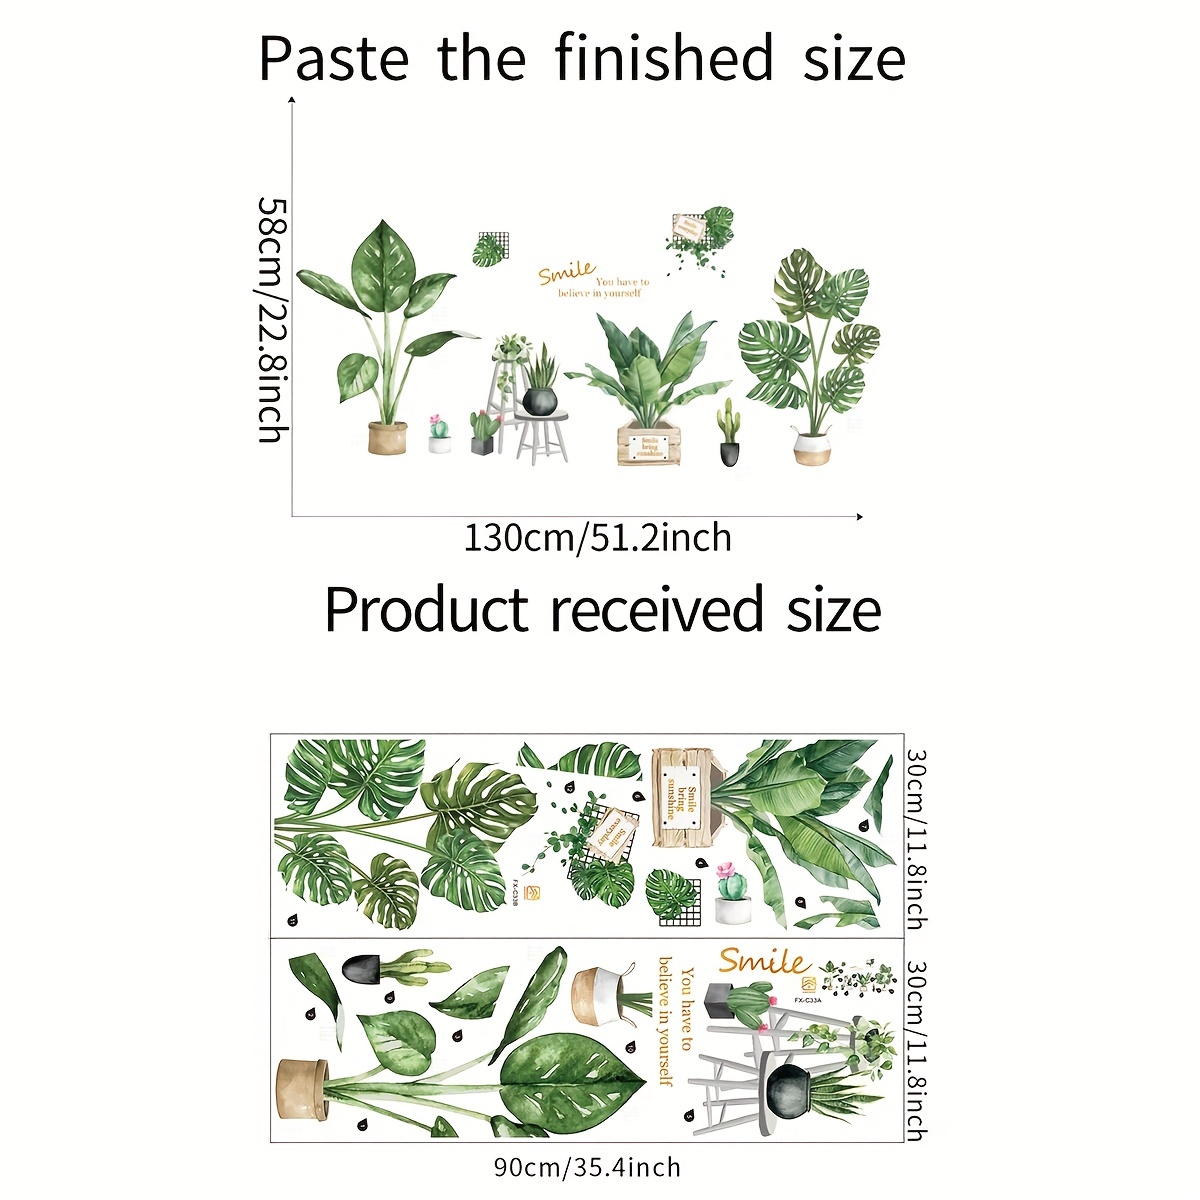 2pcs Creative Plante Verte Stickers Muraux, Grandes Plantes Vertes  Feuillues En Pot, Autocollants Amovibles En Vinyle